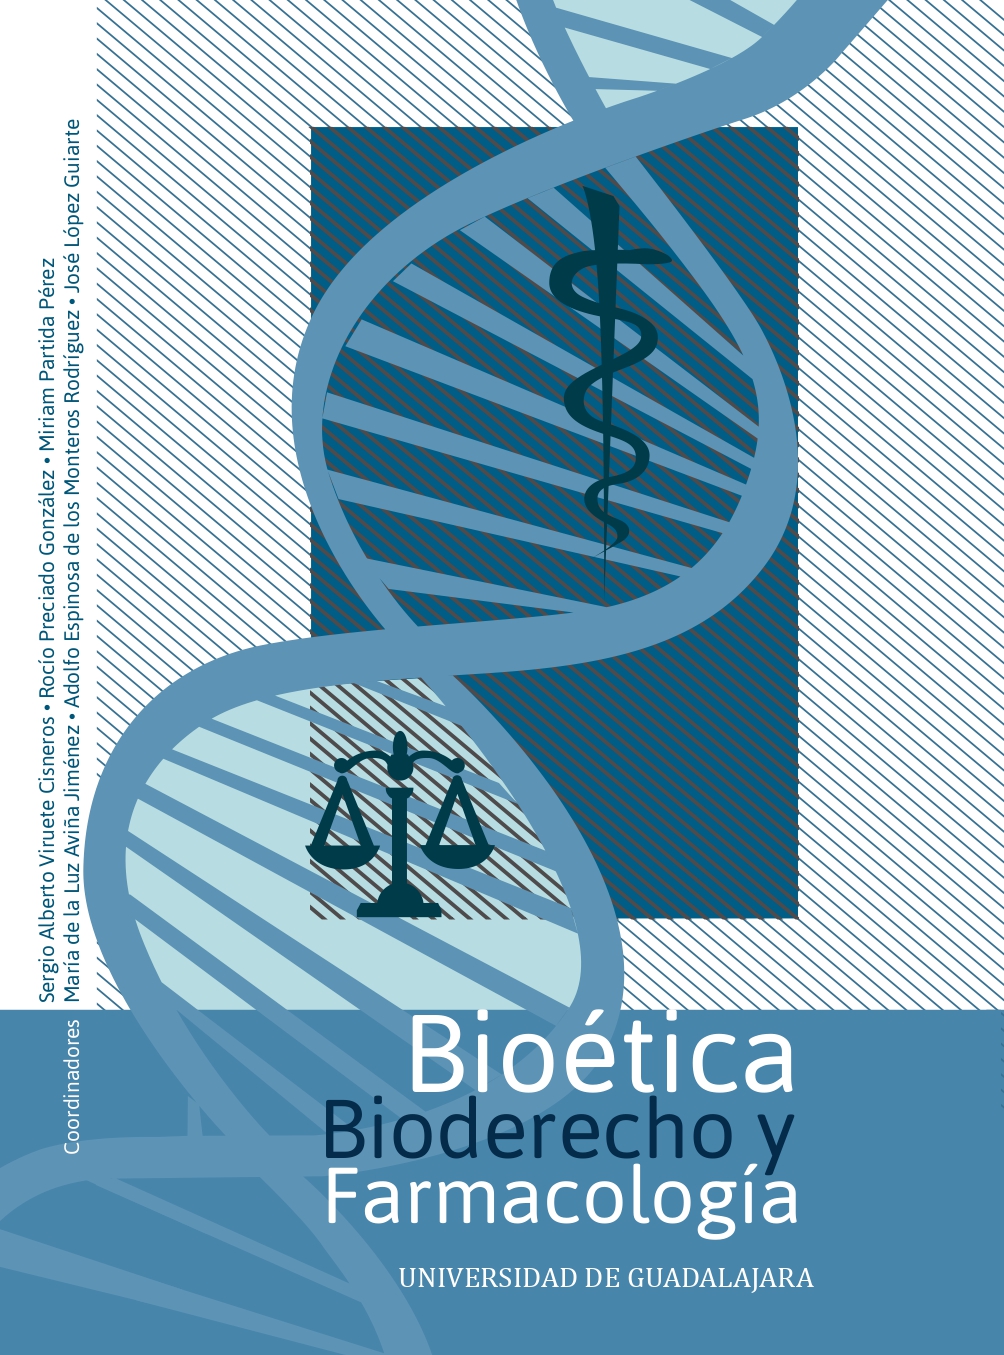 Bioética, bioderecho y farmacología<br />
                                        